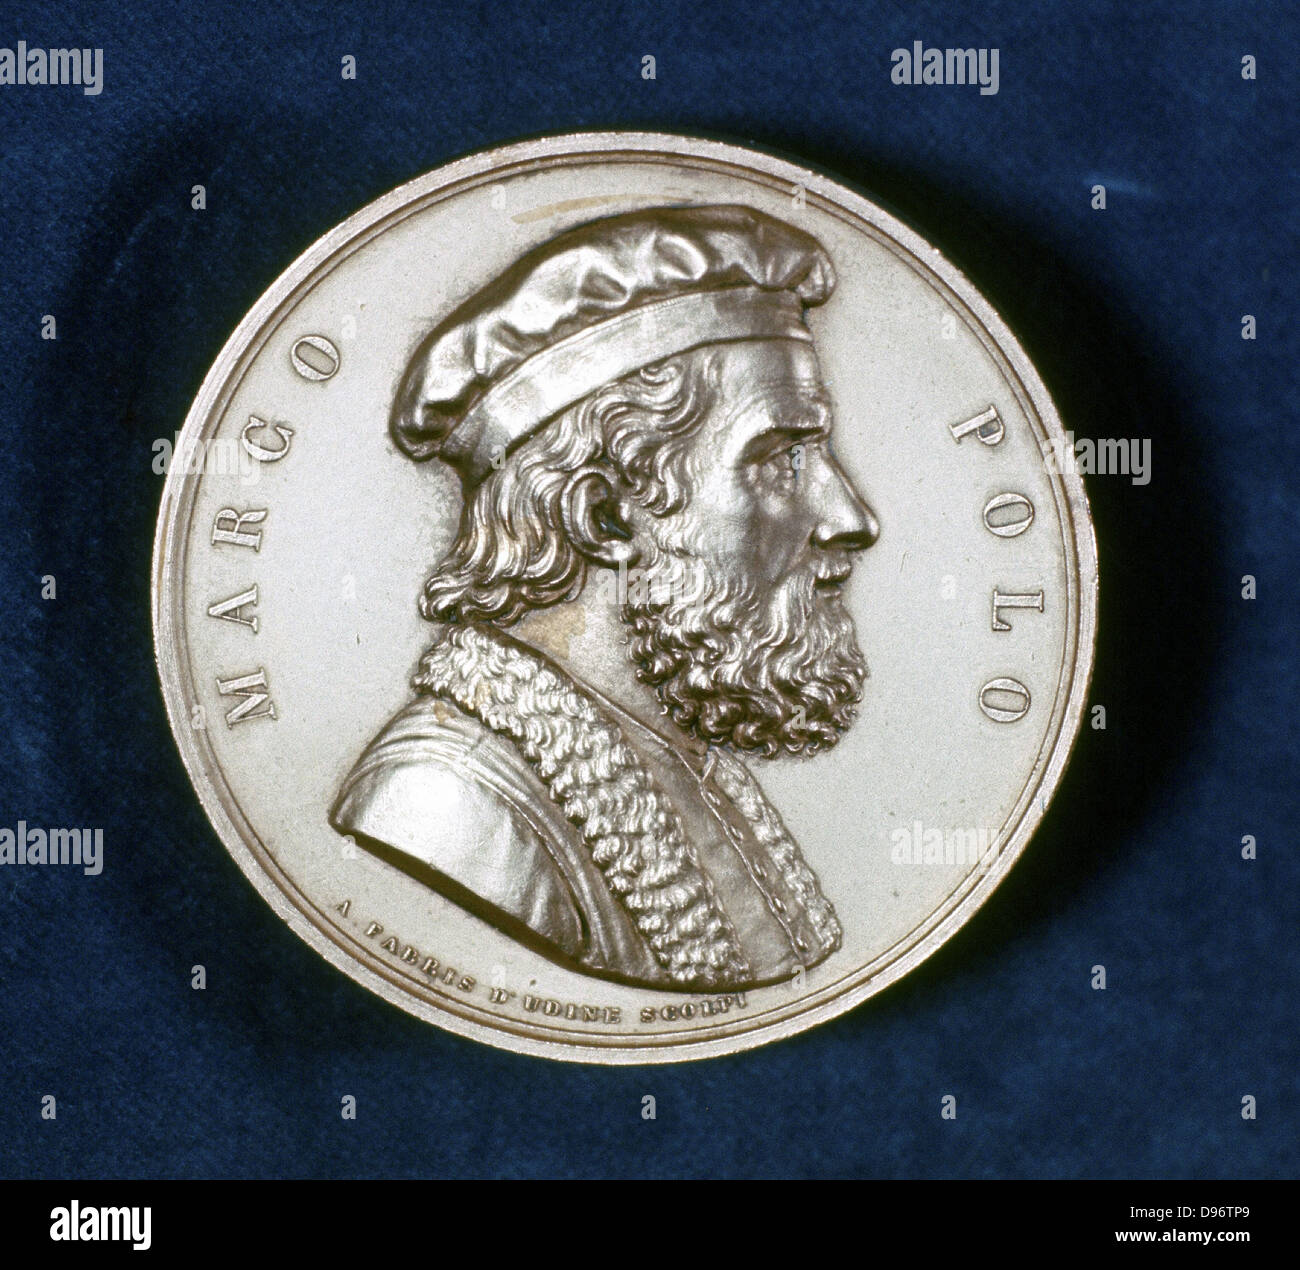 Marco Polo (1254-1324), diario del viajero y comerciante veneciano. Retrato del anverso de la medalla conmemorativa. Foto de stock